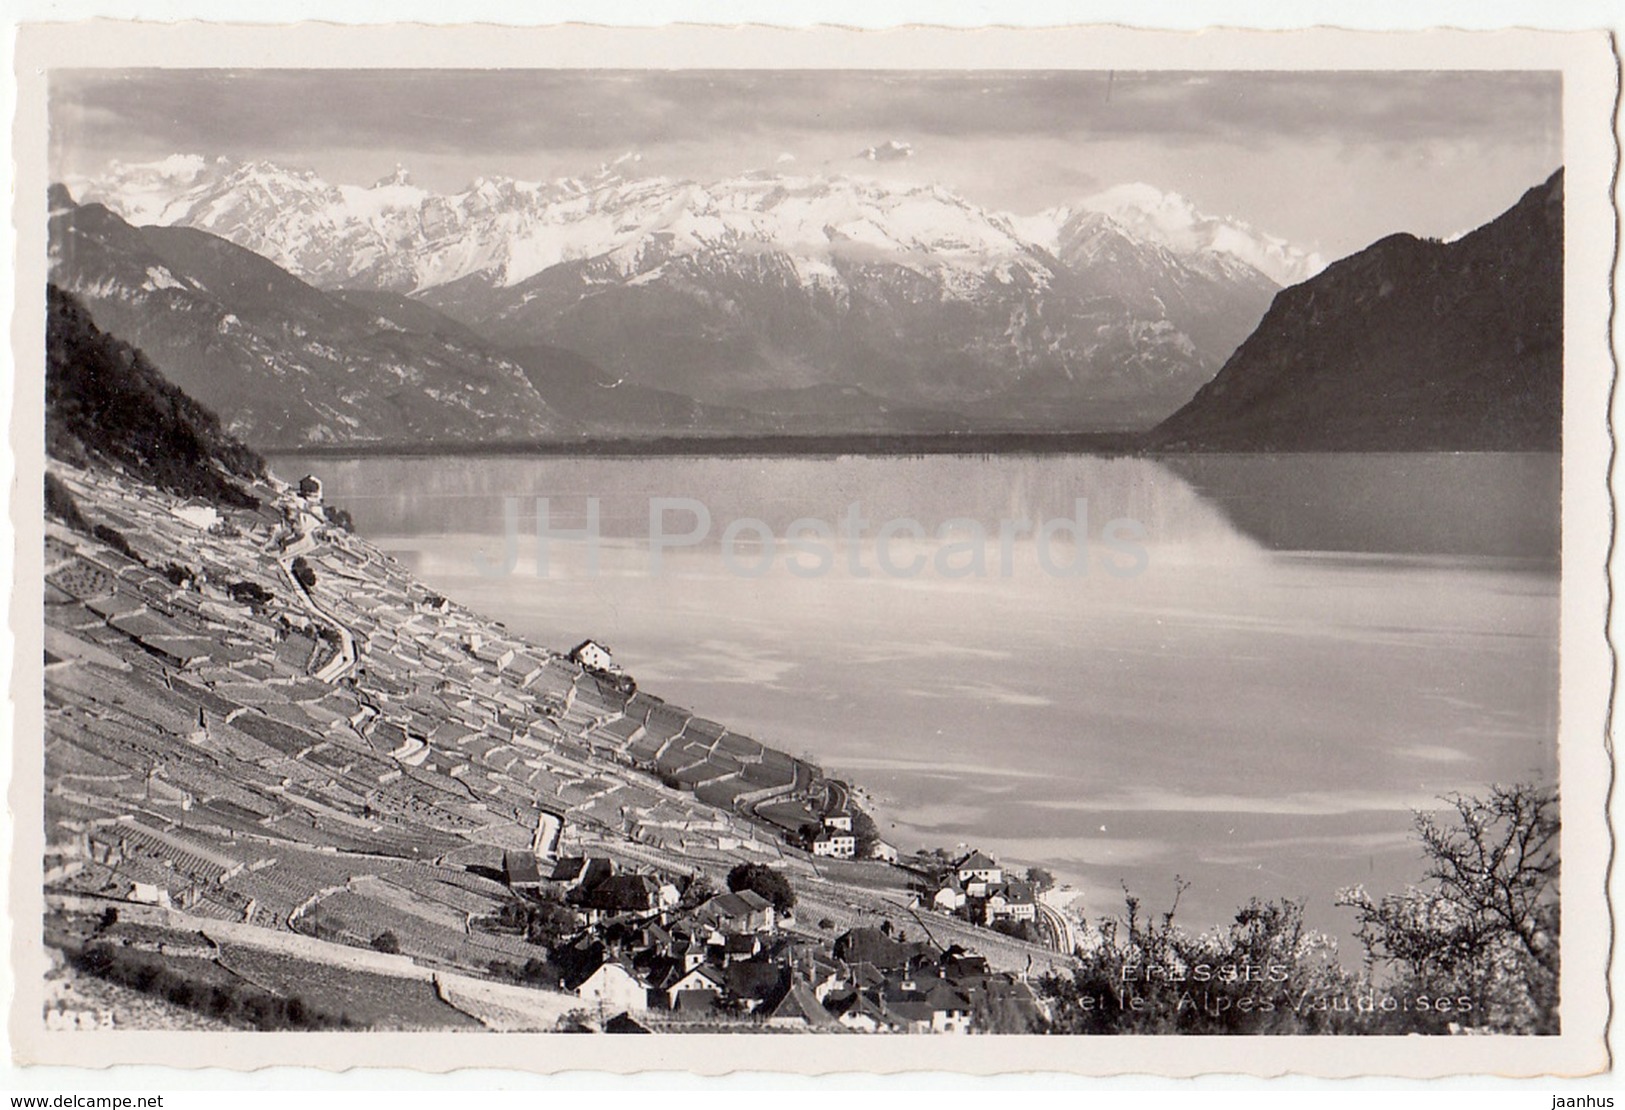 Epesses Et Le Alpes Vaudoises - Switzerland - Old Postcard - Unused - Épesses